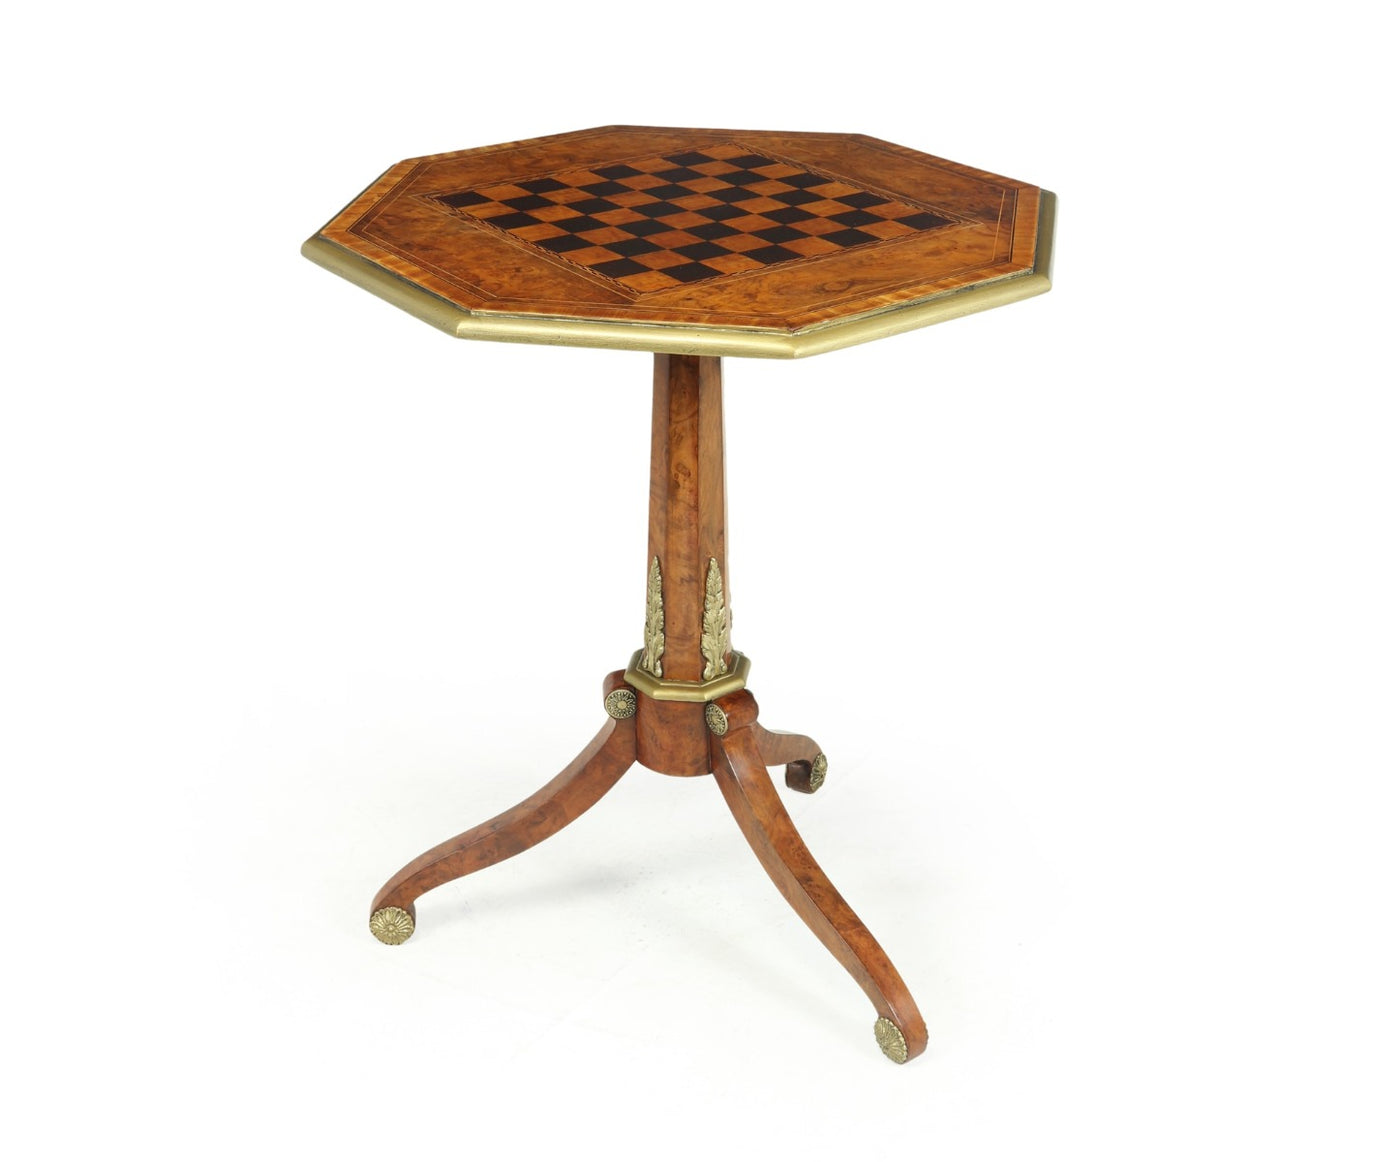 Antique English Walnut, Satinwood and Ebony Chess Table